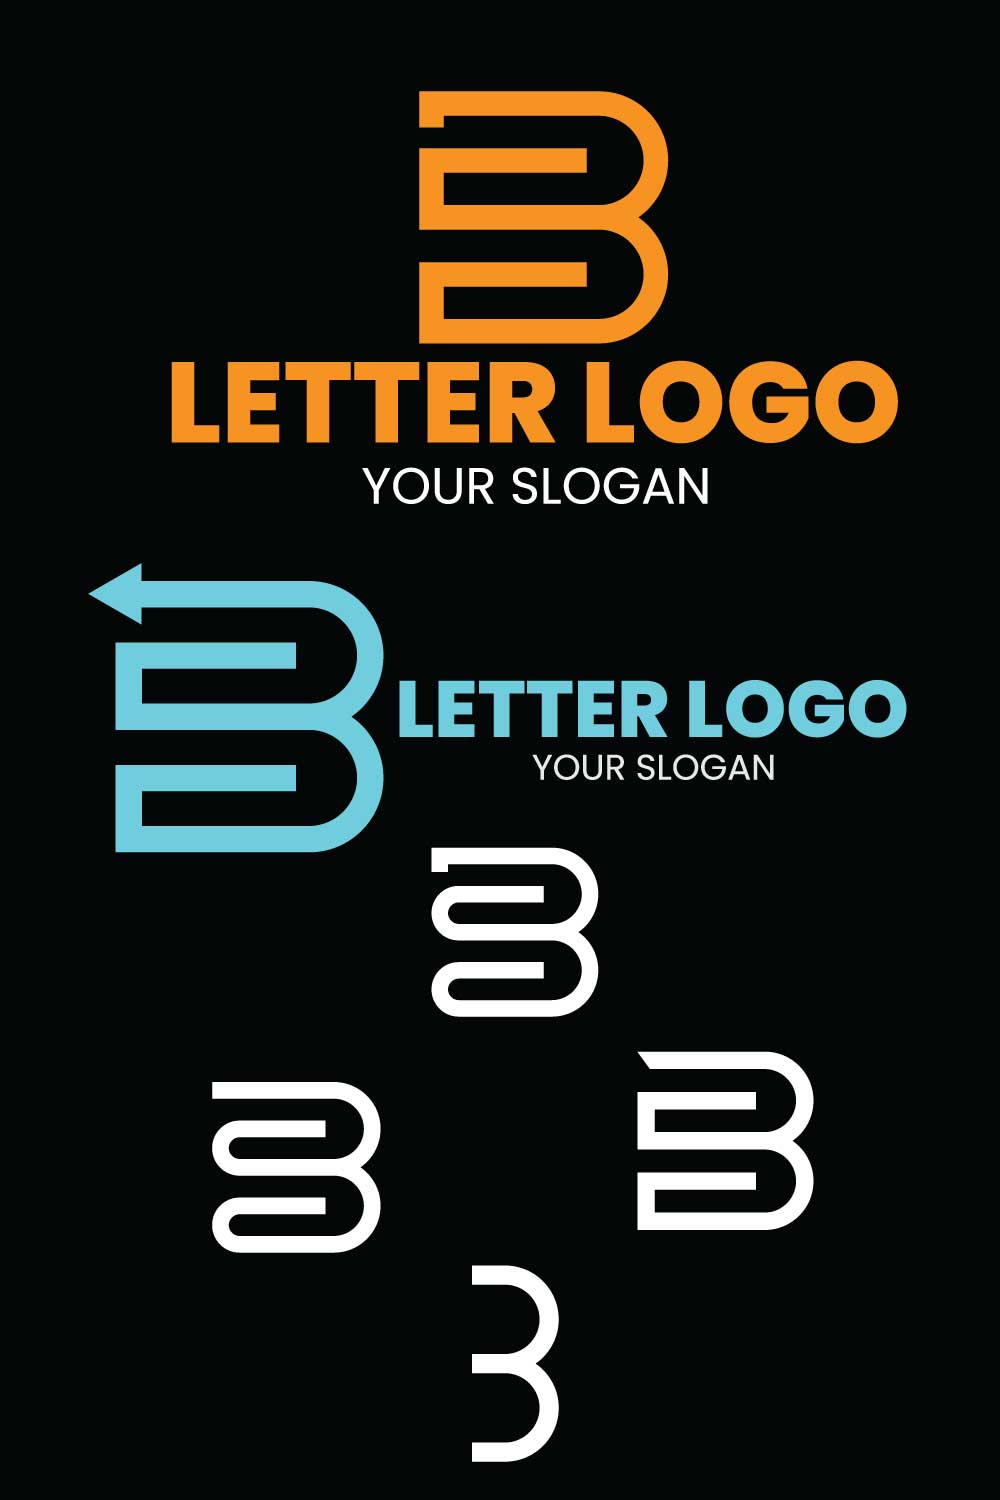 B letter logo Brand Logo pinterest preview image.